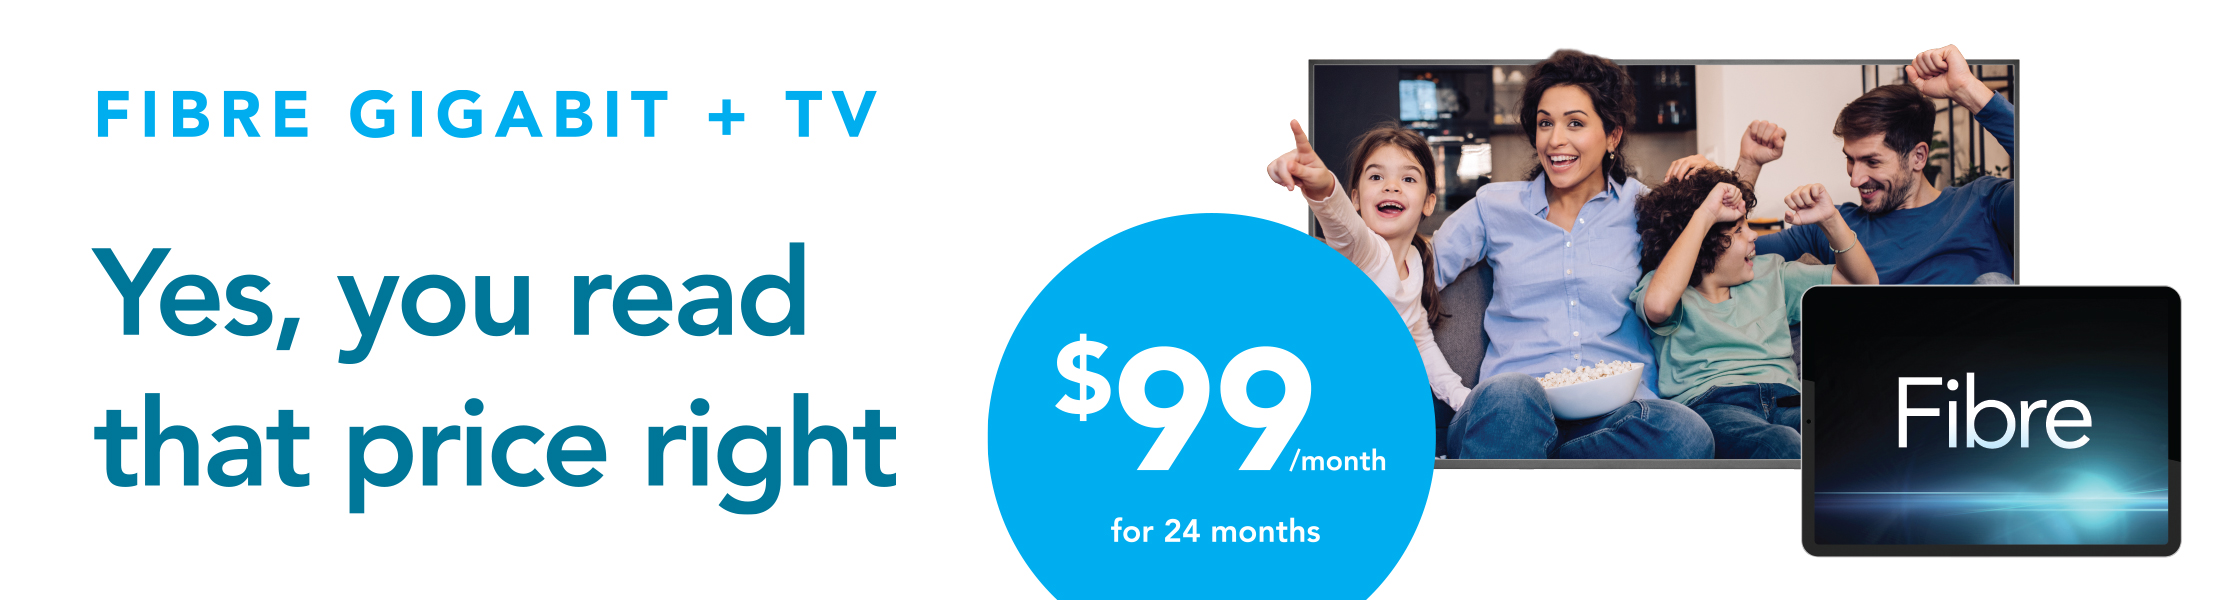 Fibre Gigabit plus TV for $99